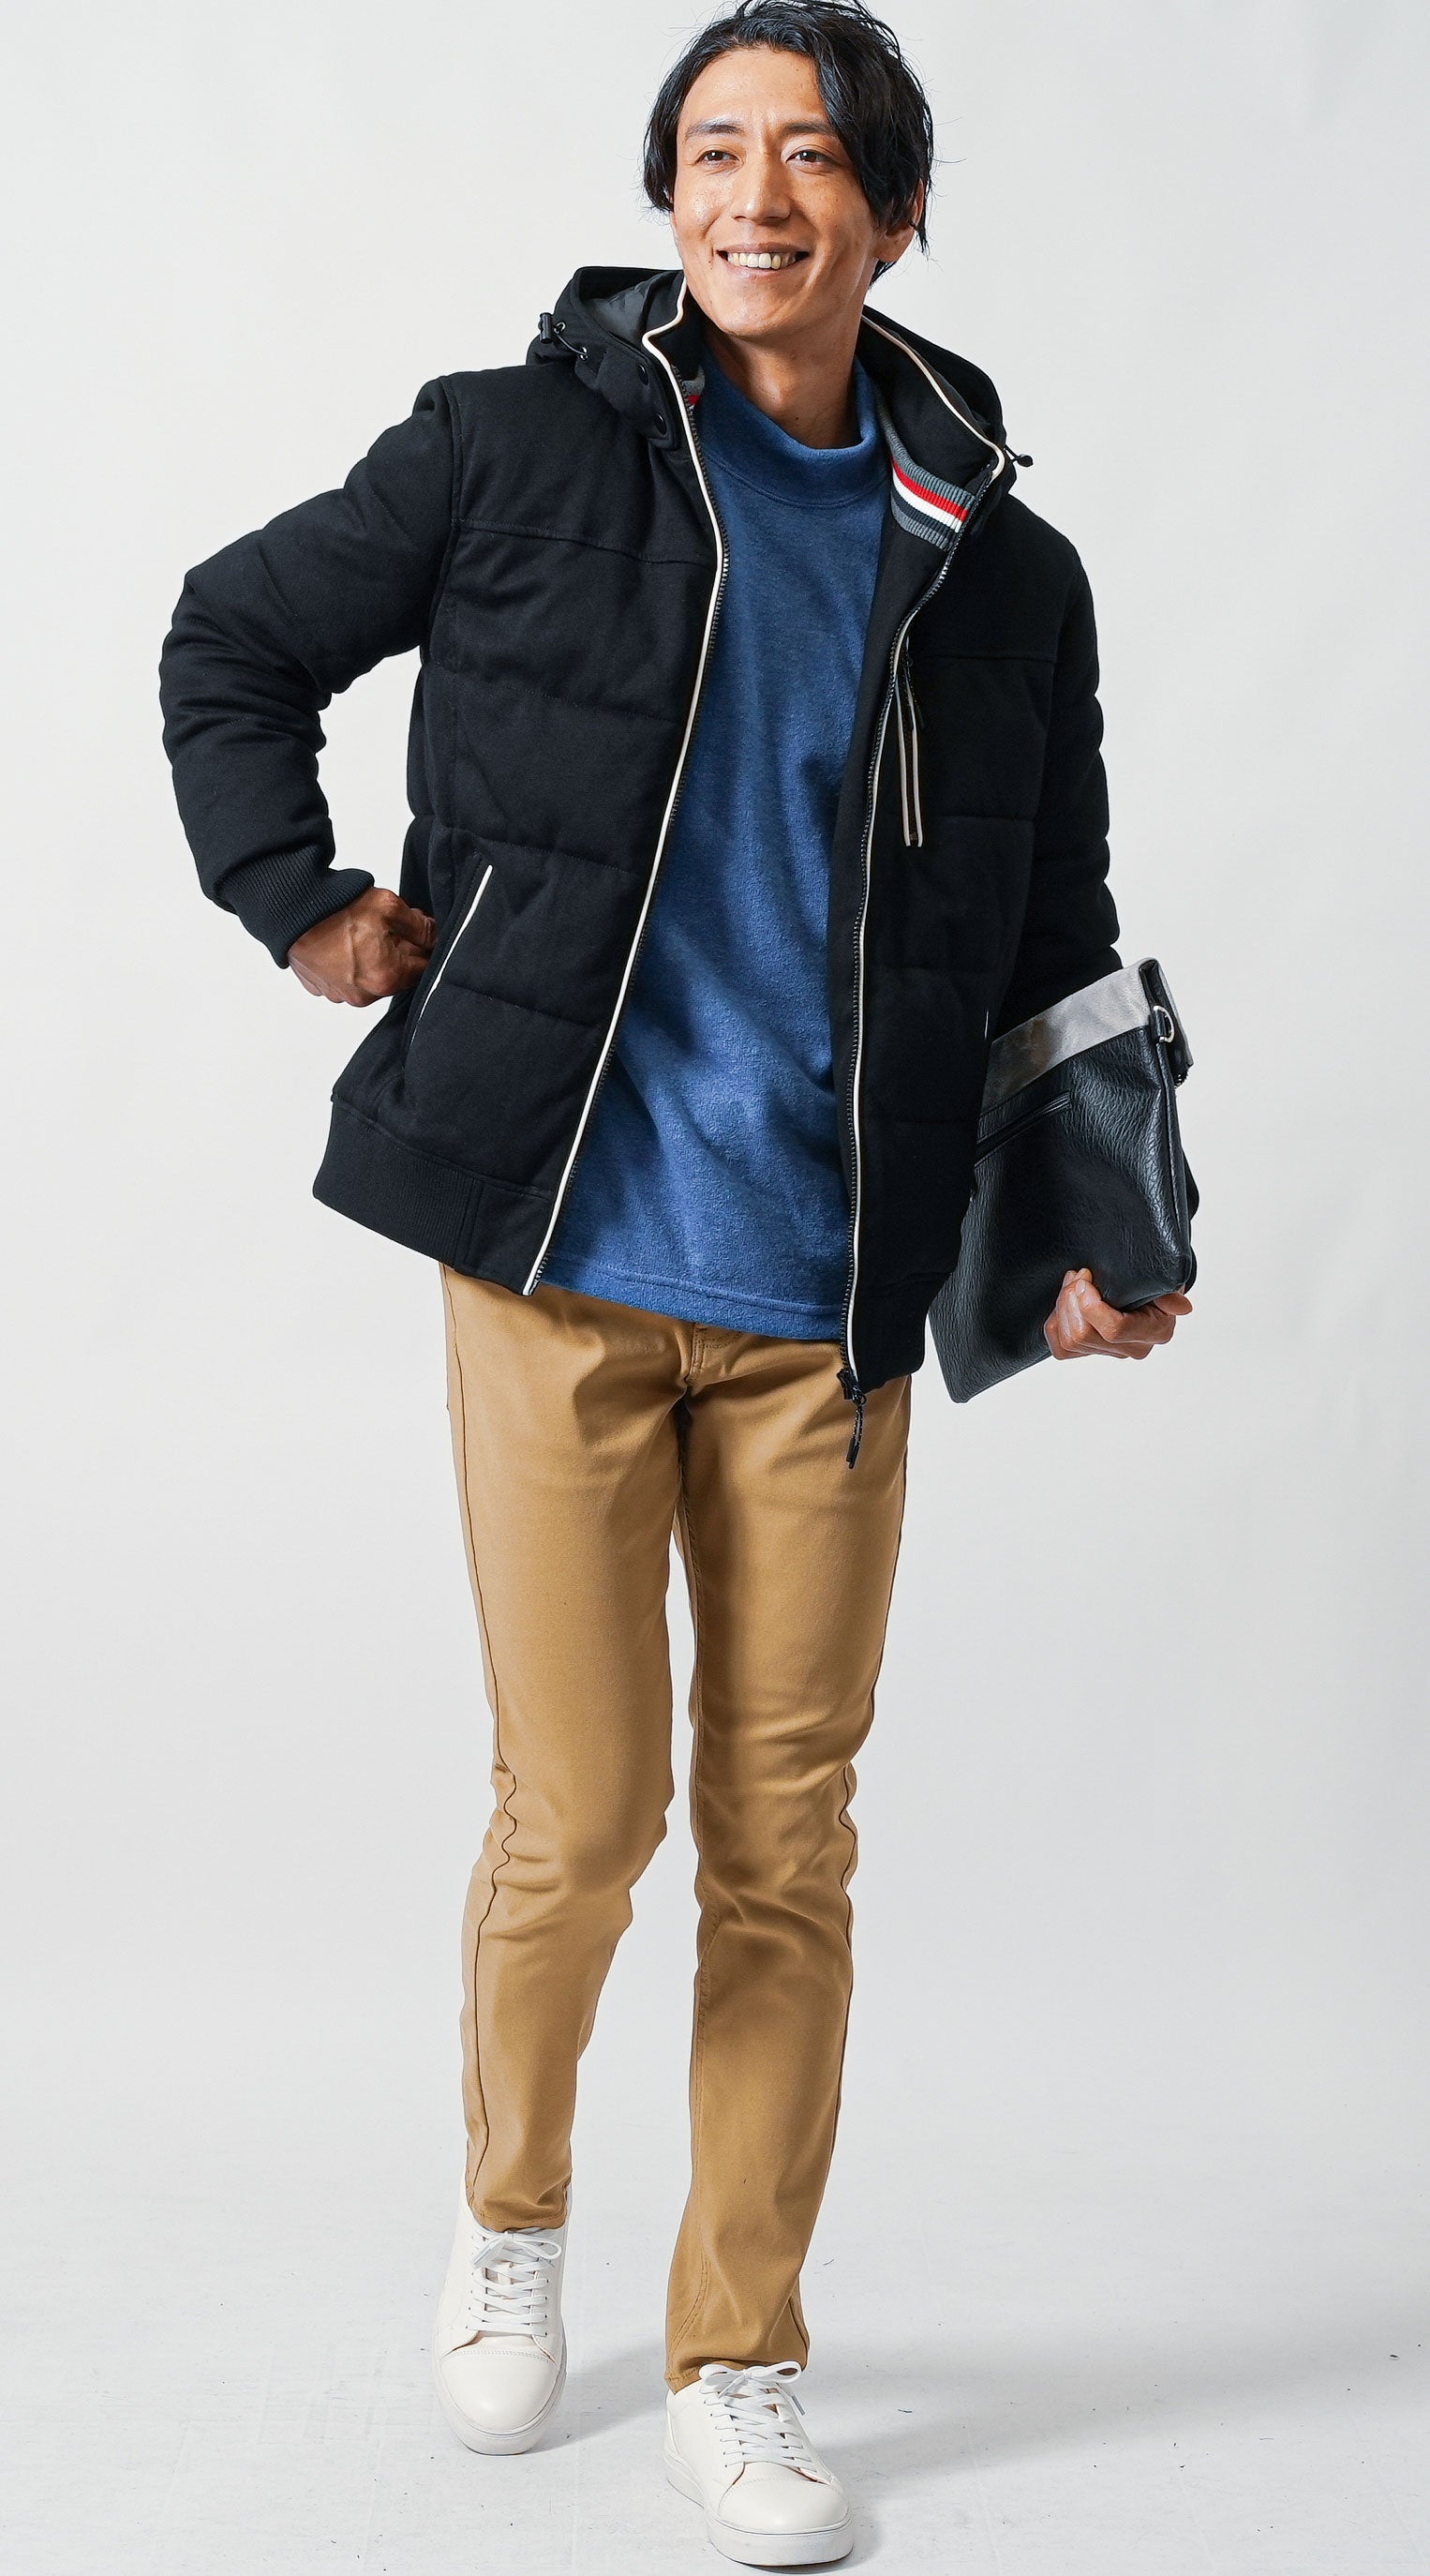 黒中綿ジャケット　ブルーハイネックニット　ベージュチノパンツ　メンズ コーデ 40代 50代 男性 人気 冬 に合う おすすめ 着こなし おしゃれ かっこいい